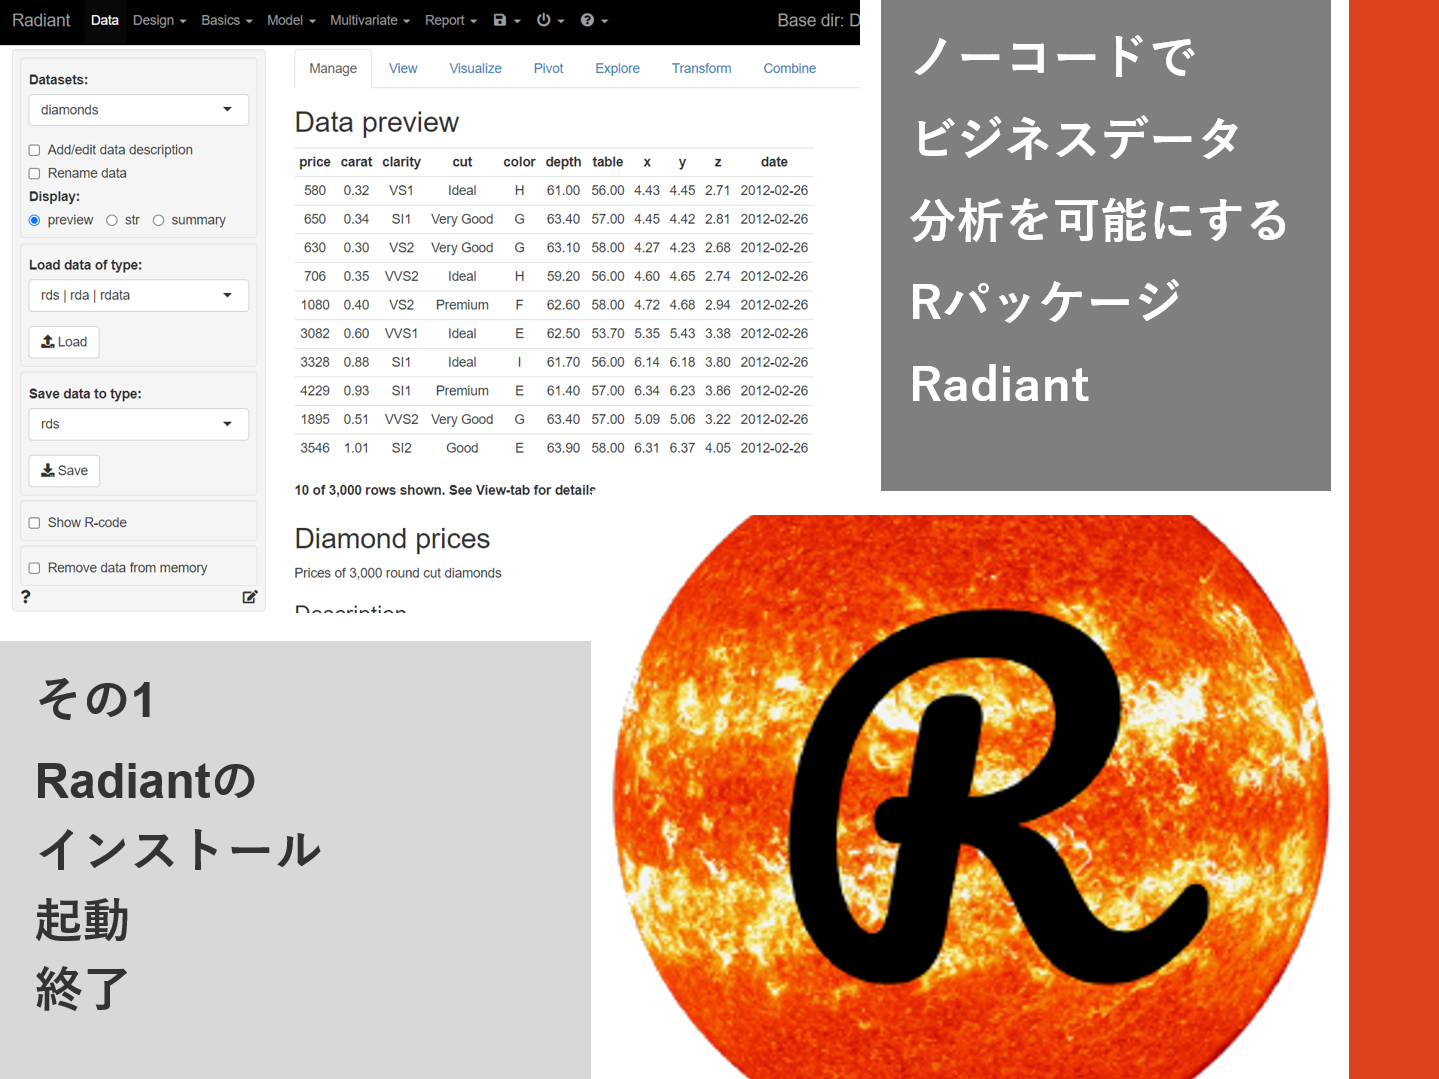 ノーコードでビジネスデータ分析を可能にするRパッケージRadiant<br>その1（Radiantのインストール・起動・終了）